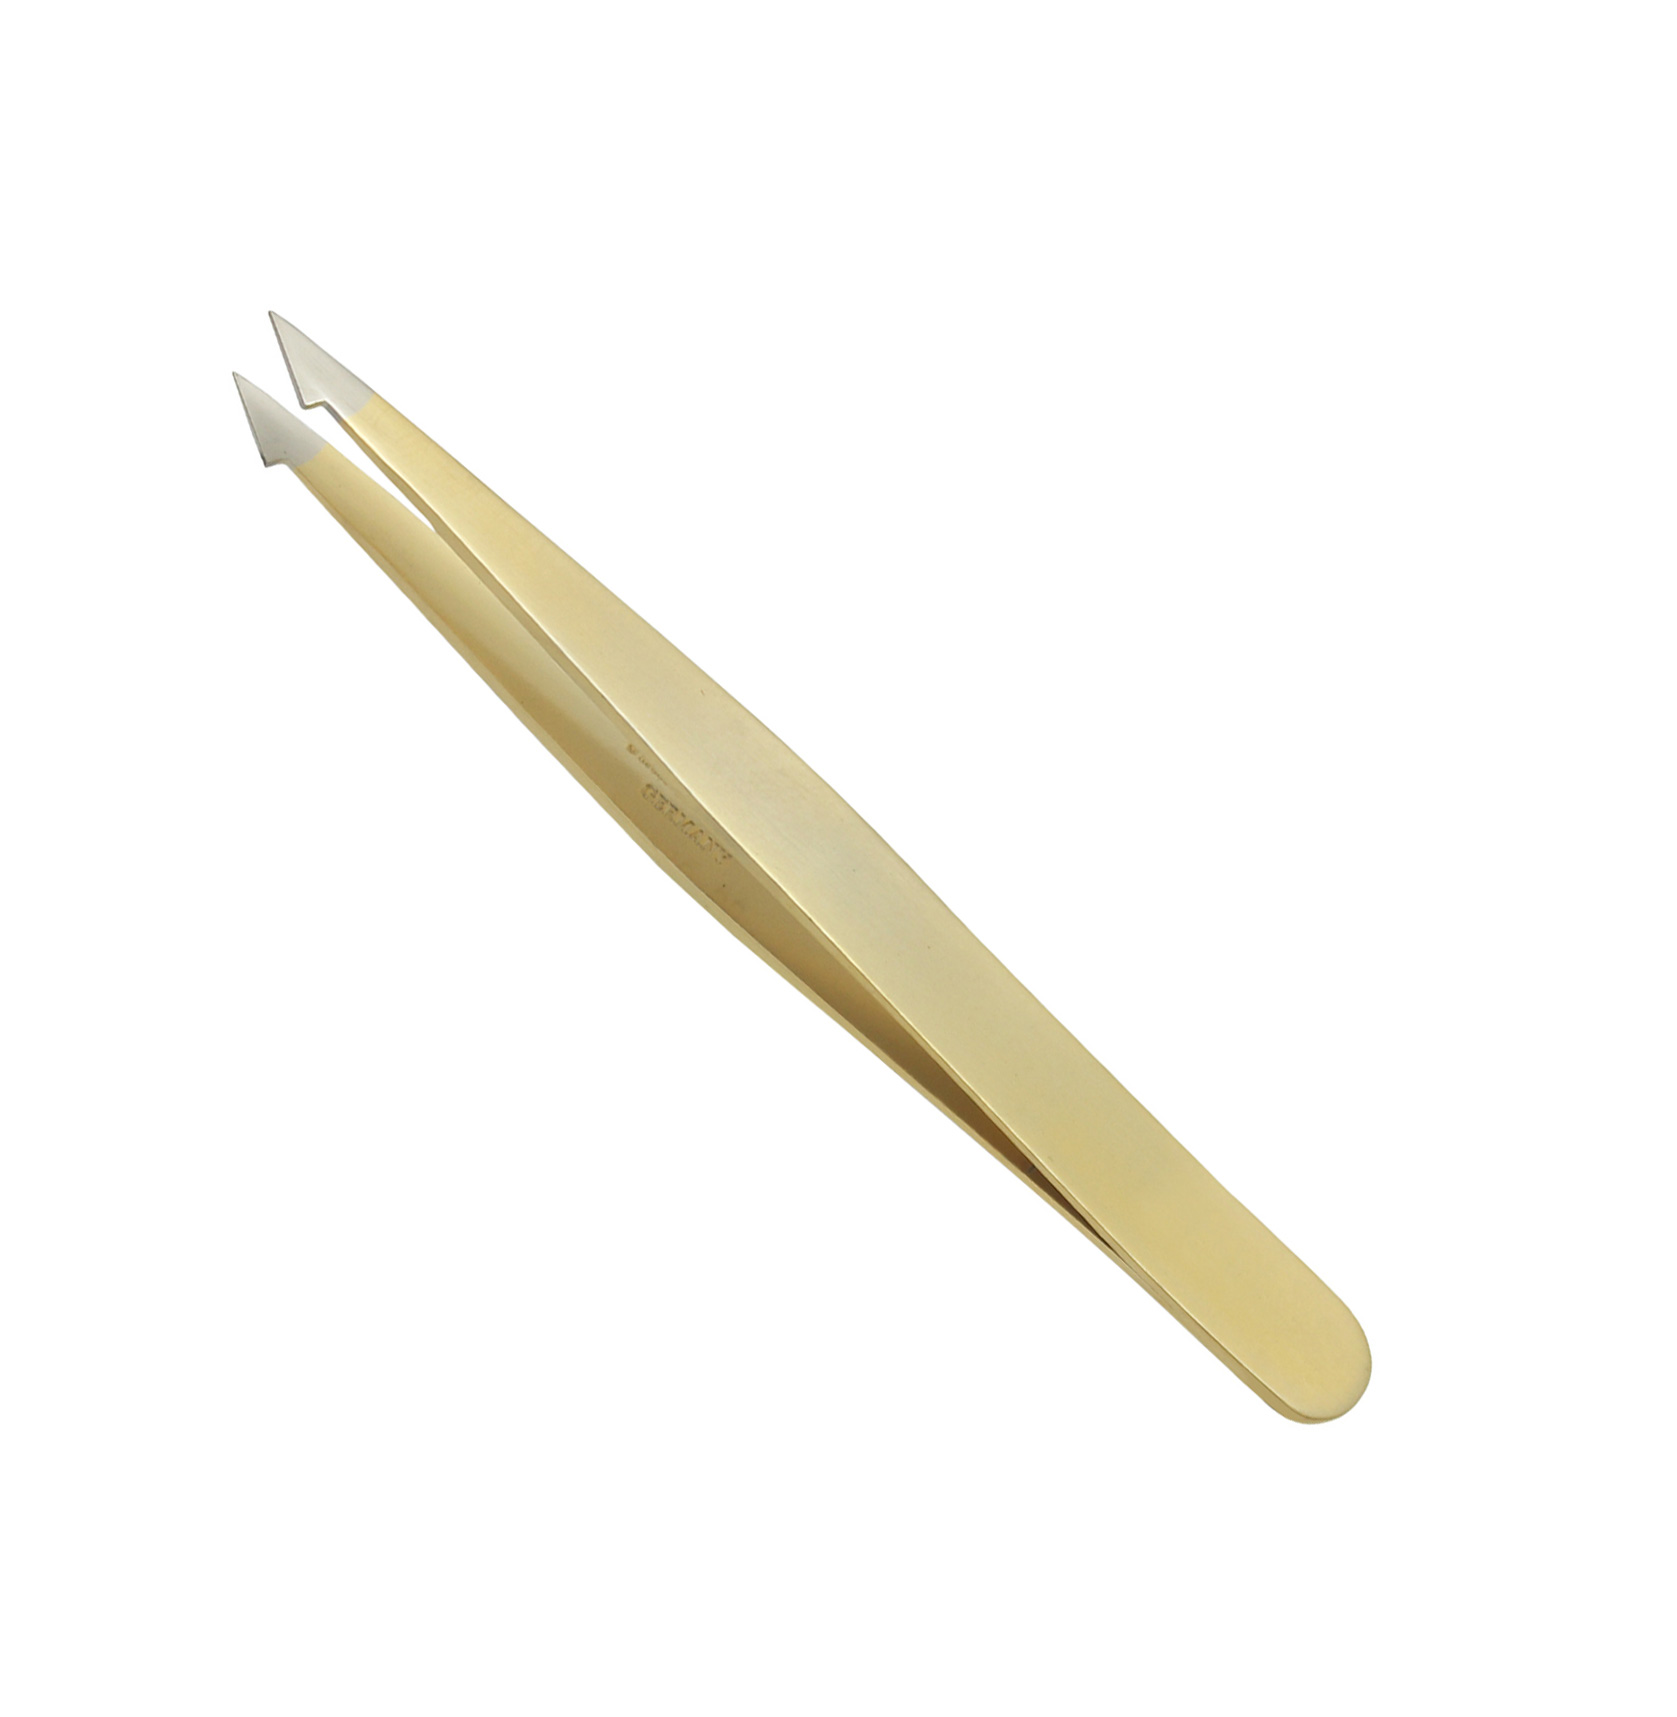 Excellent tweezers 9.5 cm, golden, slanted